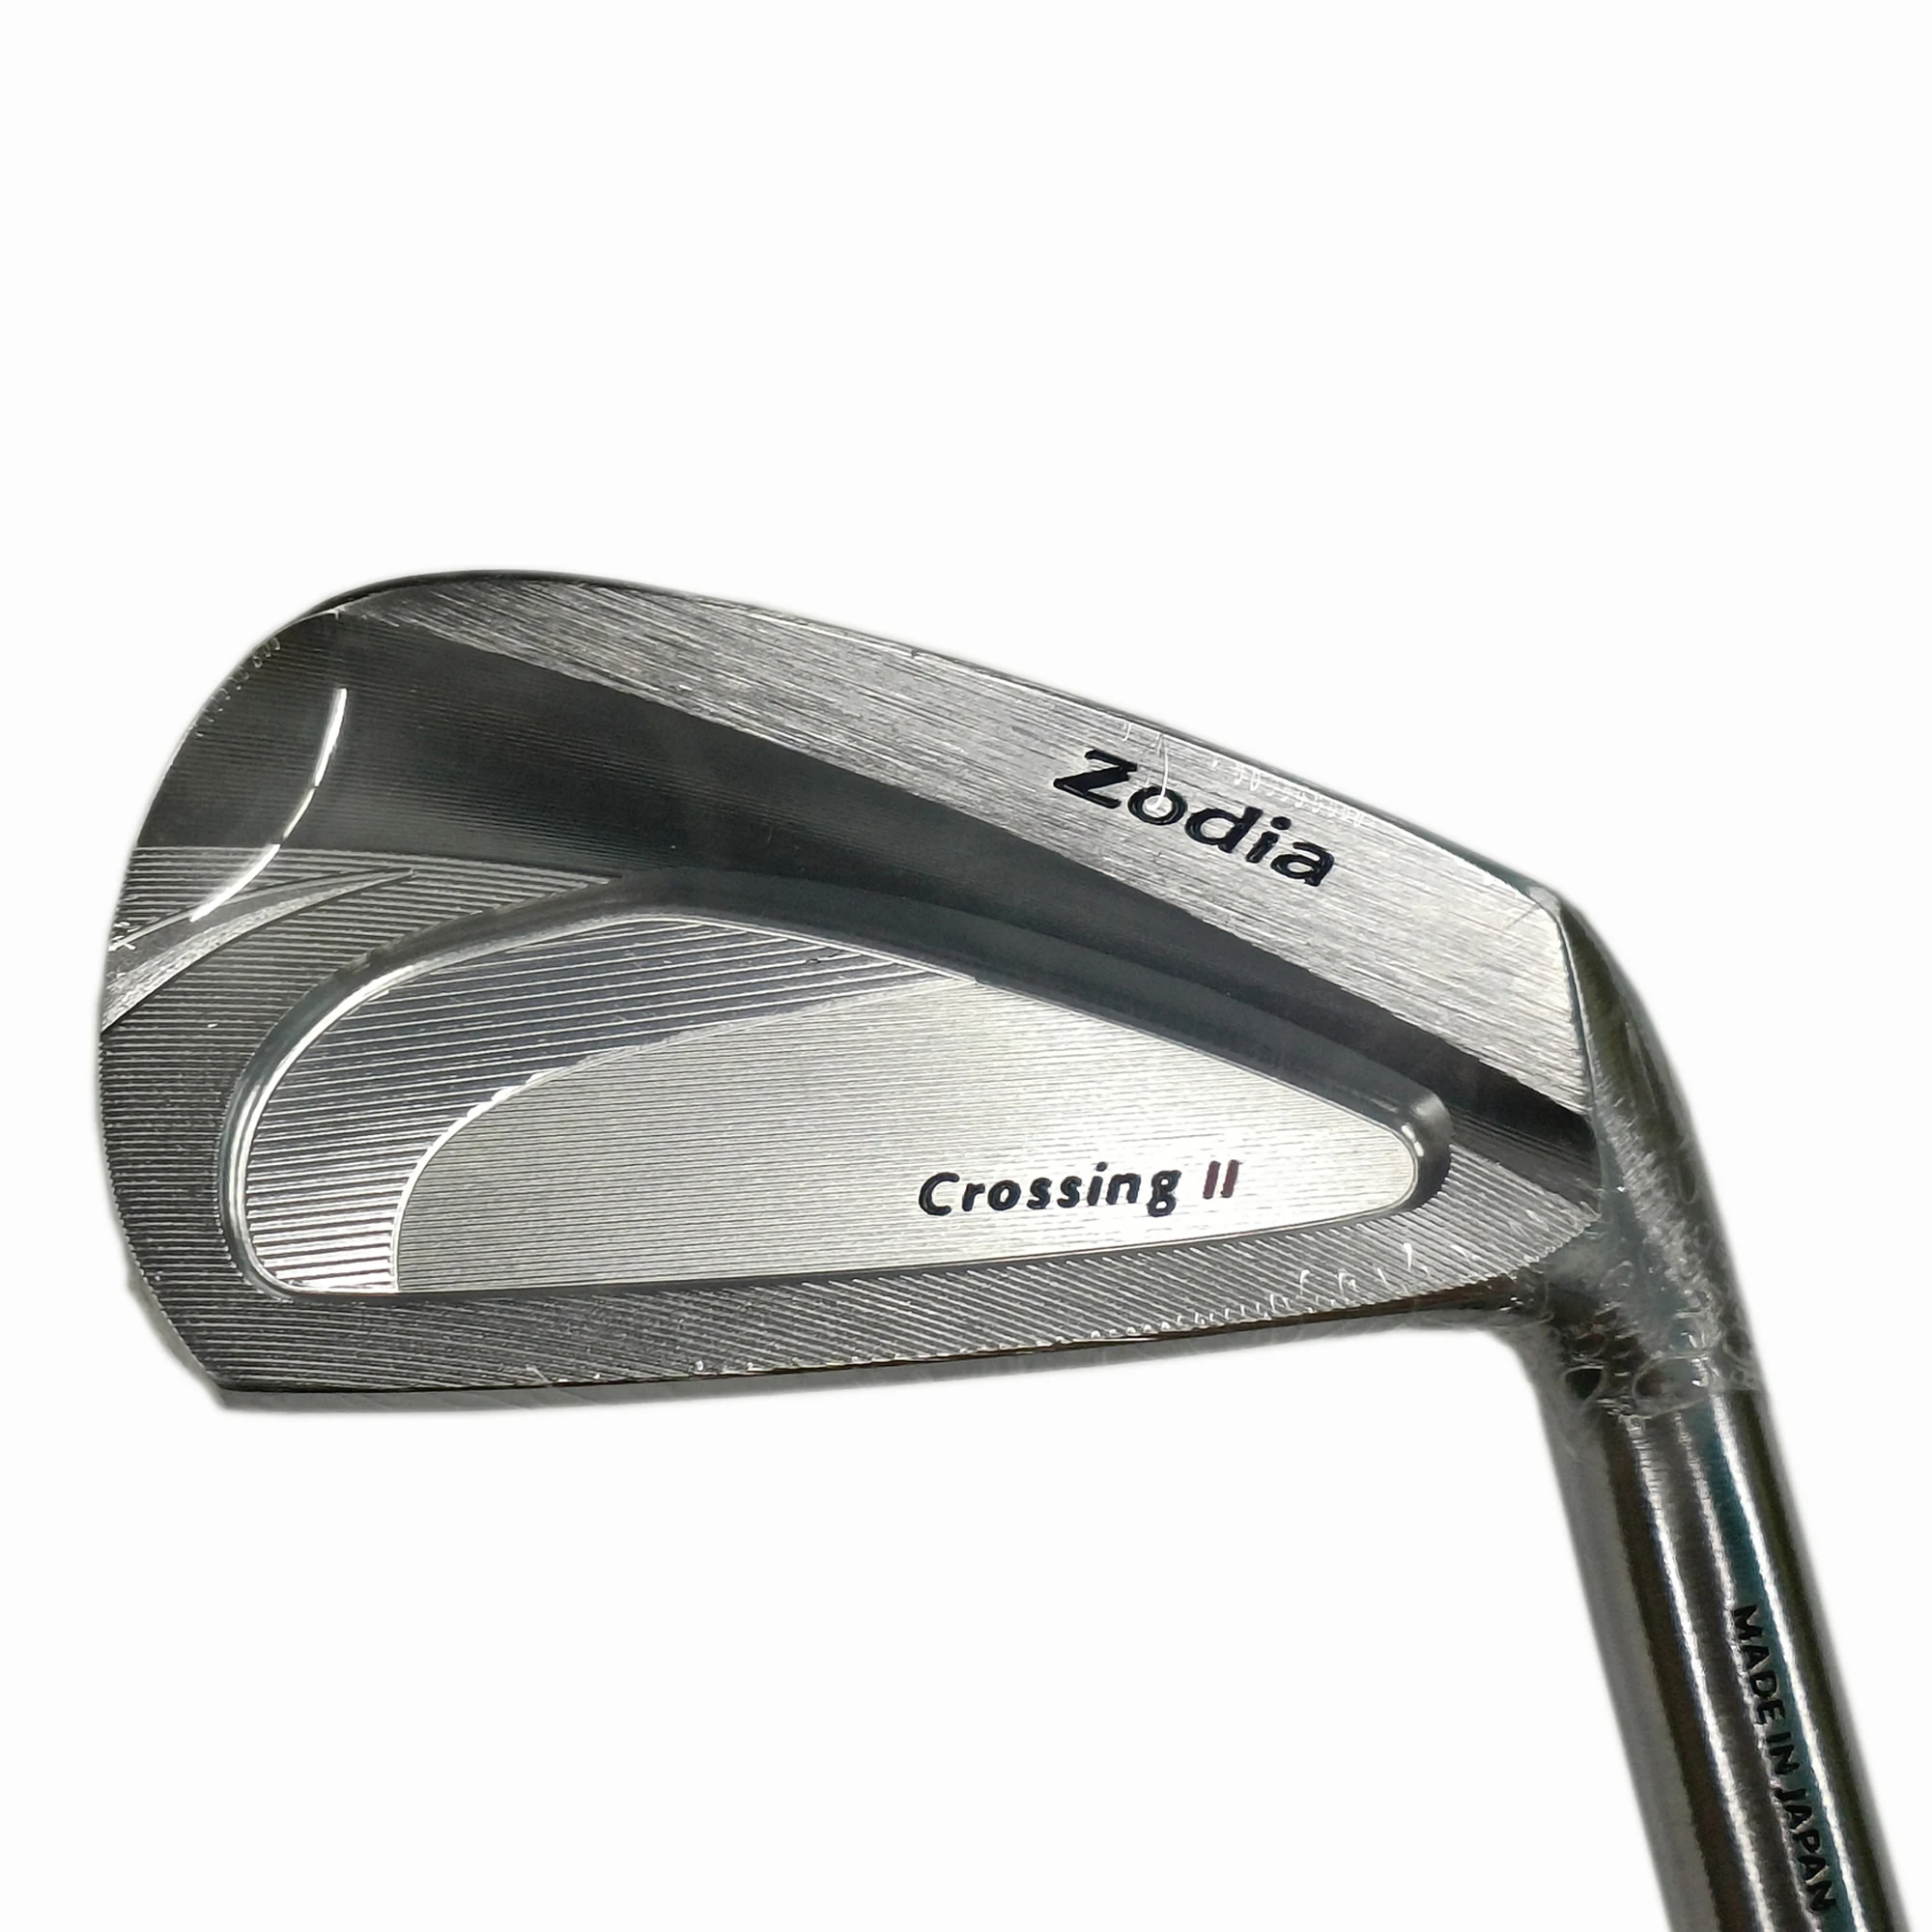 

Новые клюшки для гольфа Zodia, набор кованых клюшек (4, 5, 6, 7, 8, 9 P) со стальным стержнем, 7 шт. клюшек для гольфа высшего качества, опциональны